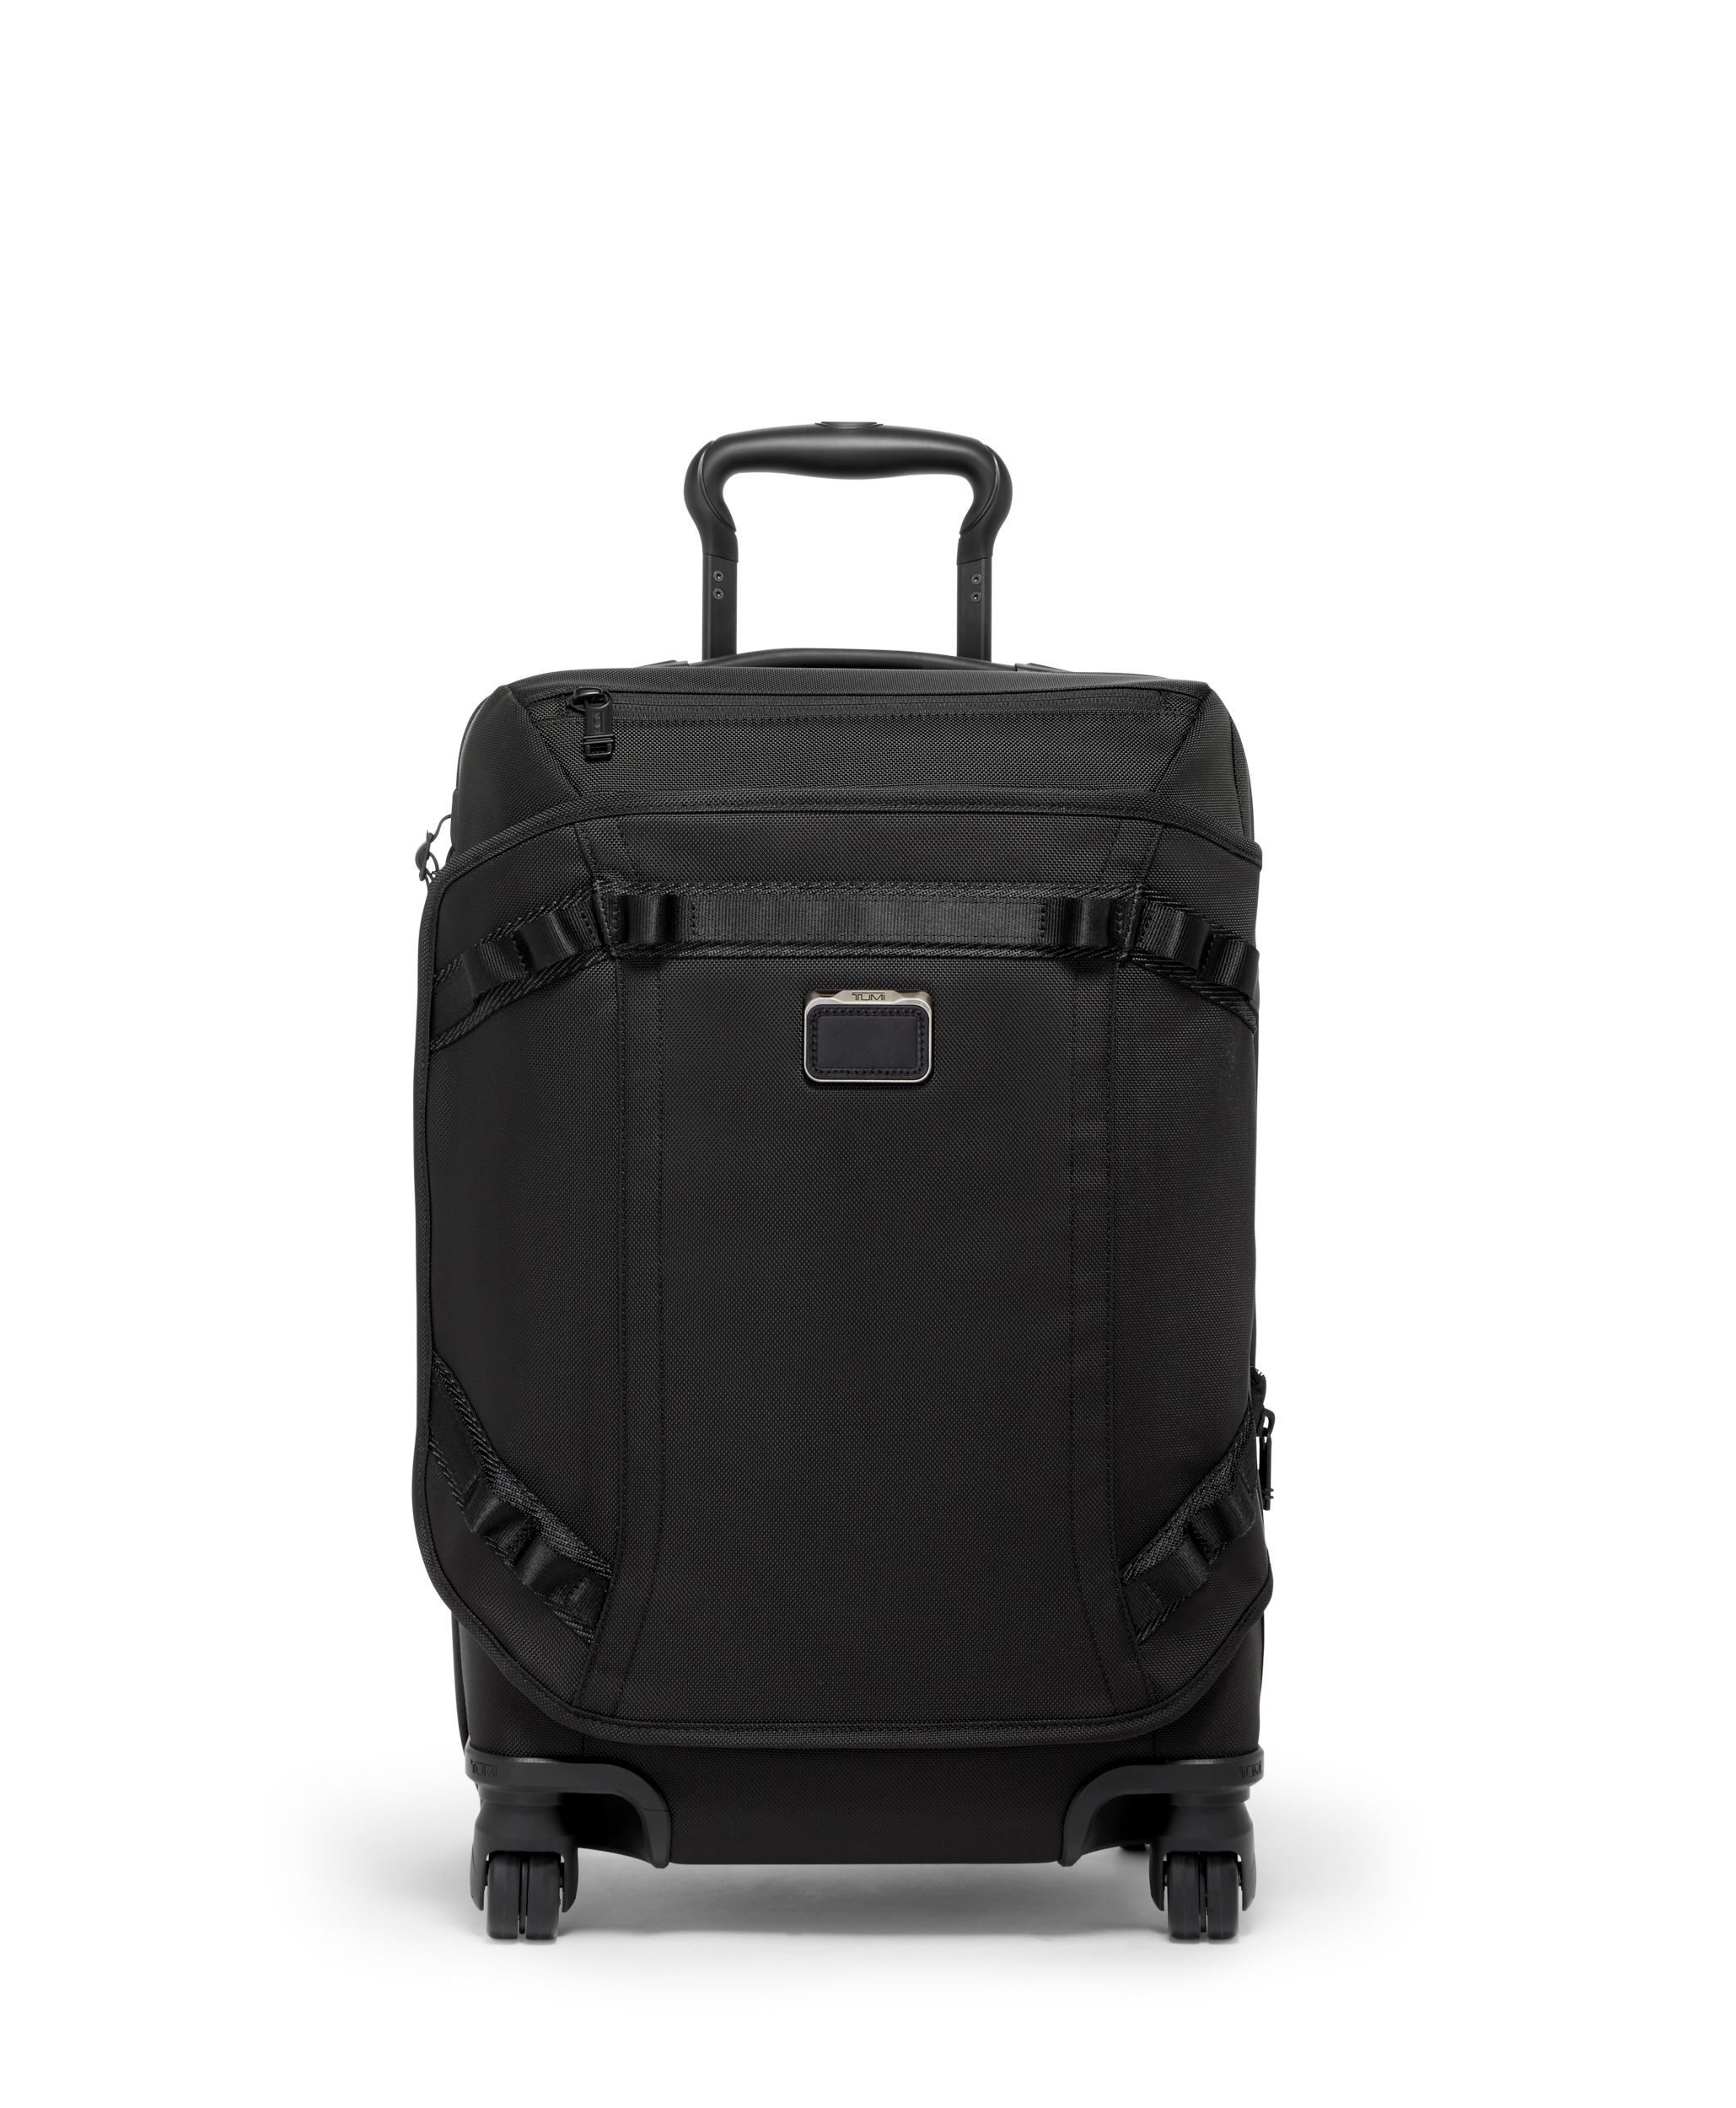 TUMI スーツケース 22020 バリスティックナイロン - トラベルバッグ